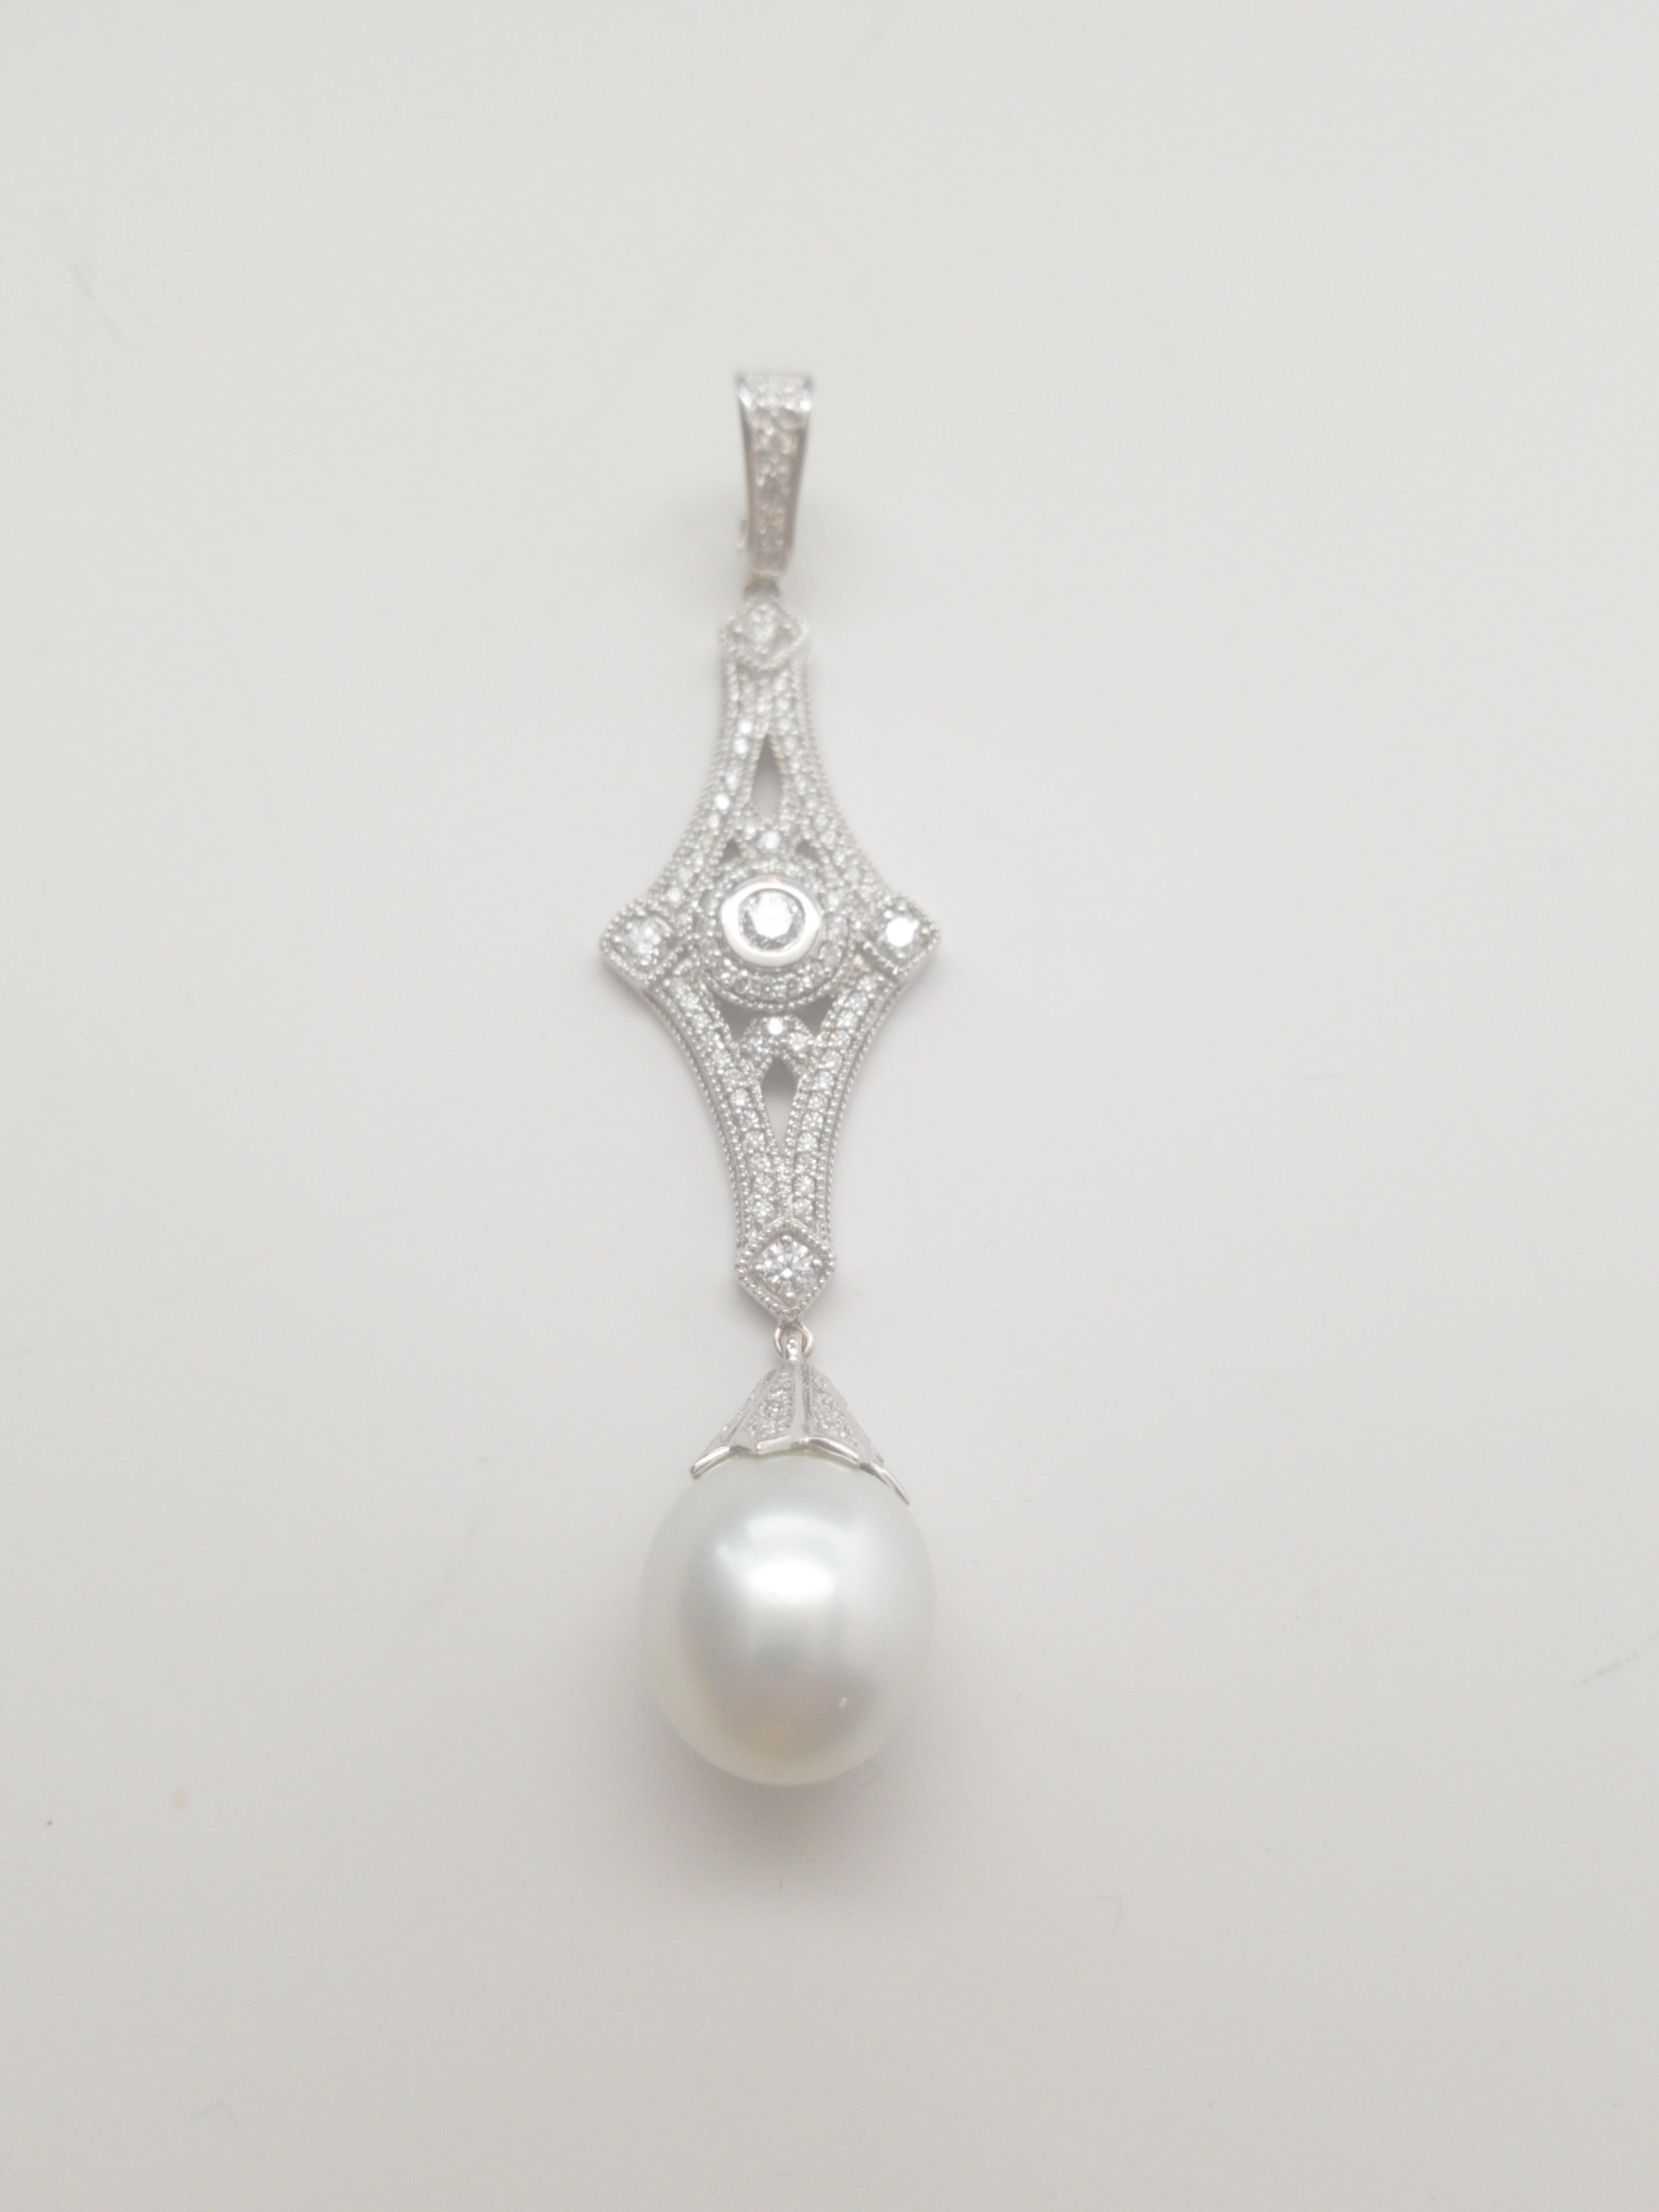 Voici un époustouflant pendentif en platine orné de diamants et de perles des mers du Sud AAAA+, d'inspiration Art déco. Fabriqué par la célèbre marque LaFrancee, ce pendentif est un véritable chef-d'œuvre qui respire l'élégance et le style. Le